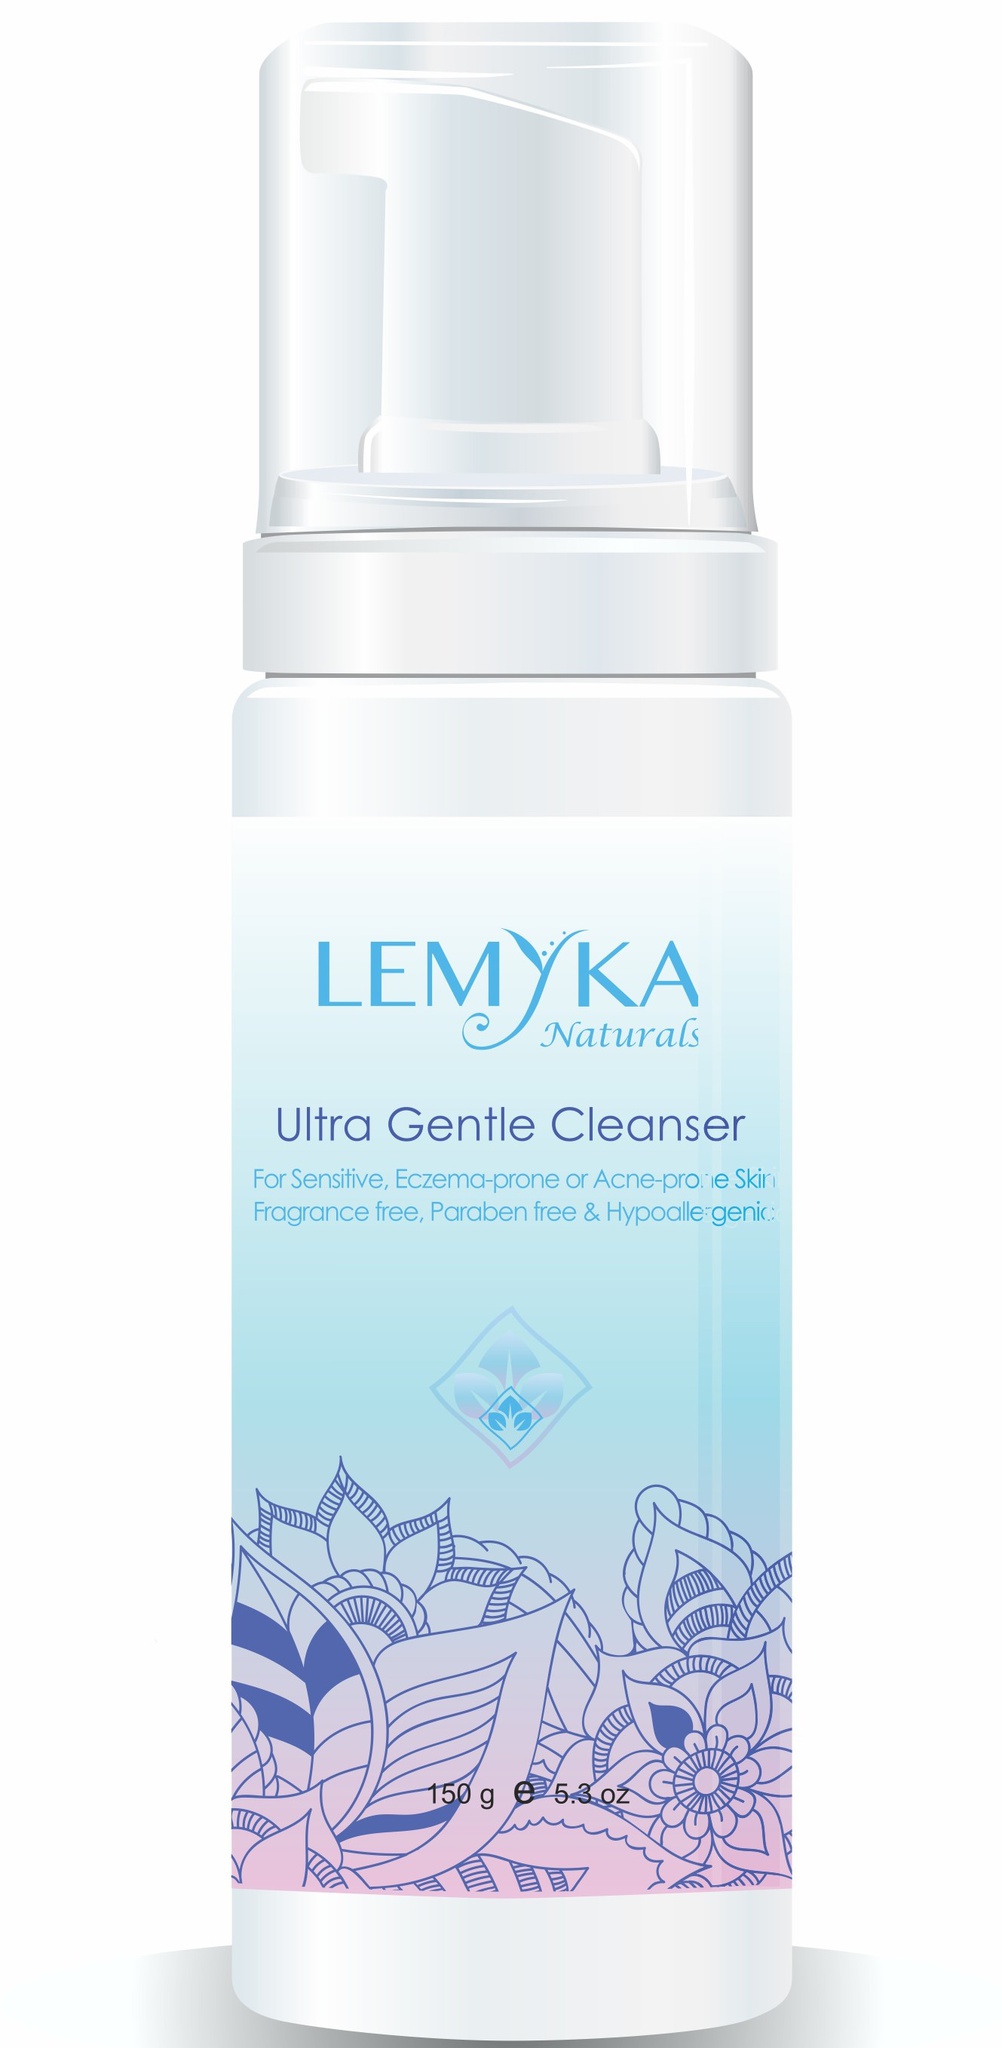 Lemyka Ultra Gentle Cleanser